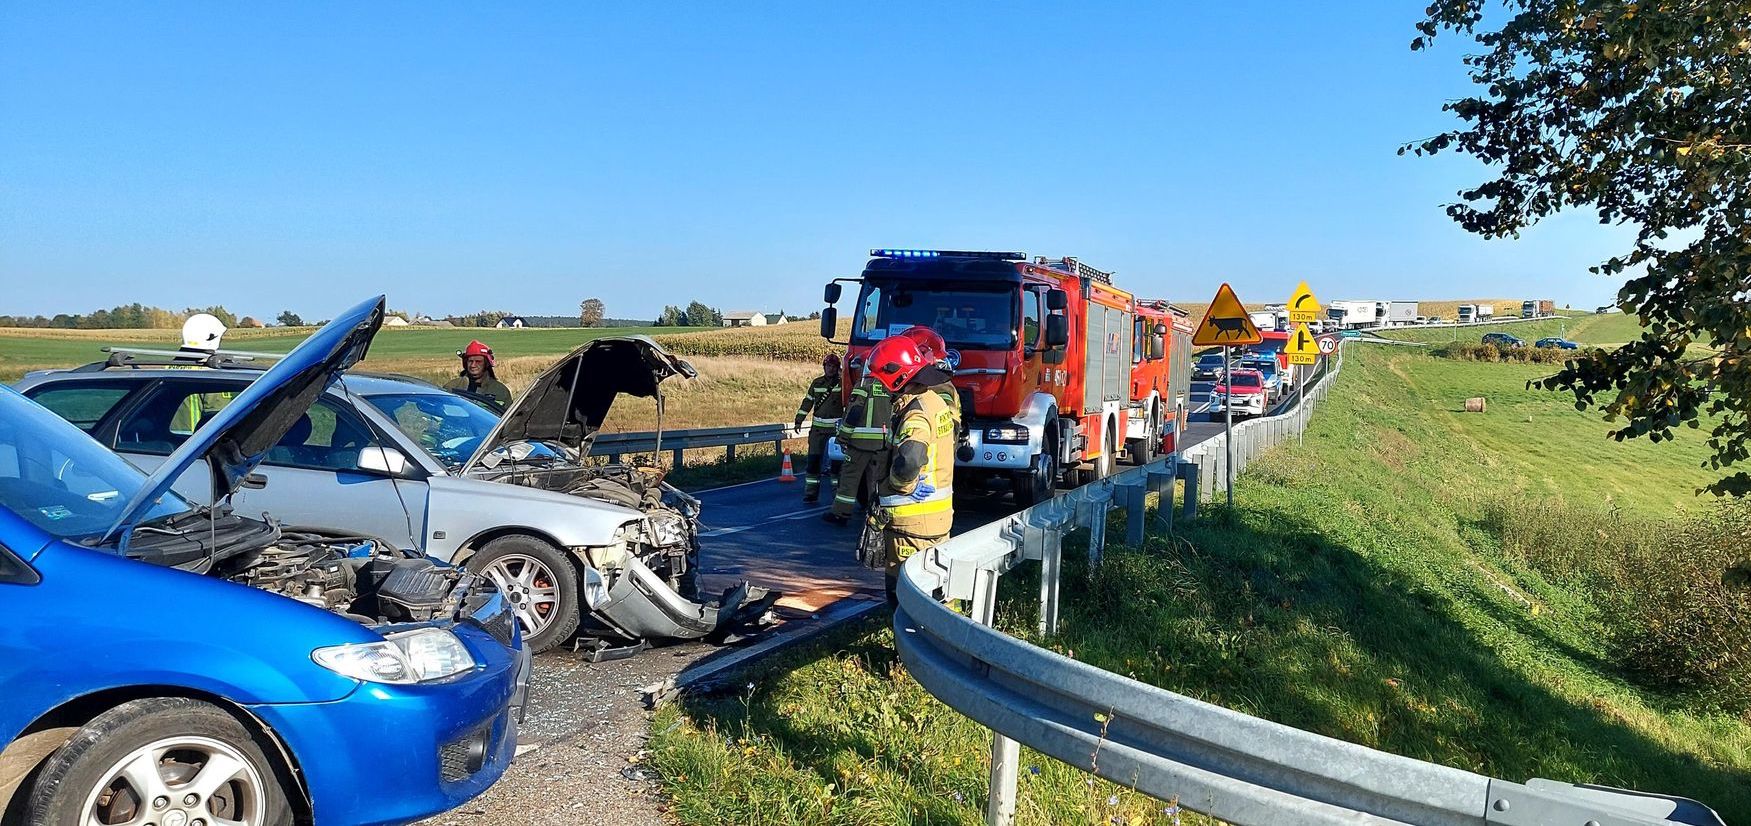  DK 16 odblokowana. Dwie osoby poszkodowane w tym wypadku trafiły do szpitala wypadek Iława, Wiadomości, zPAP